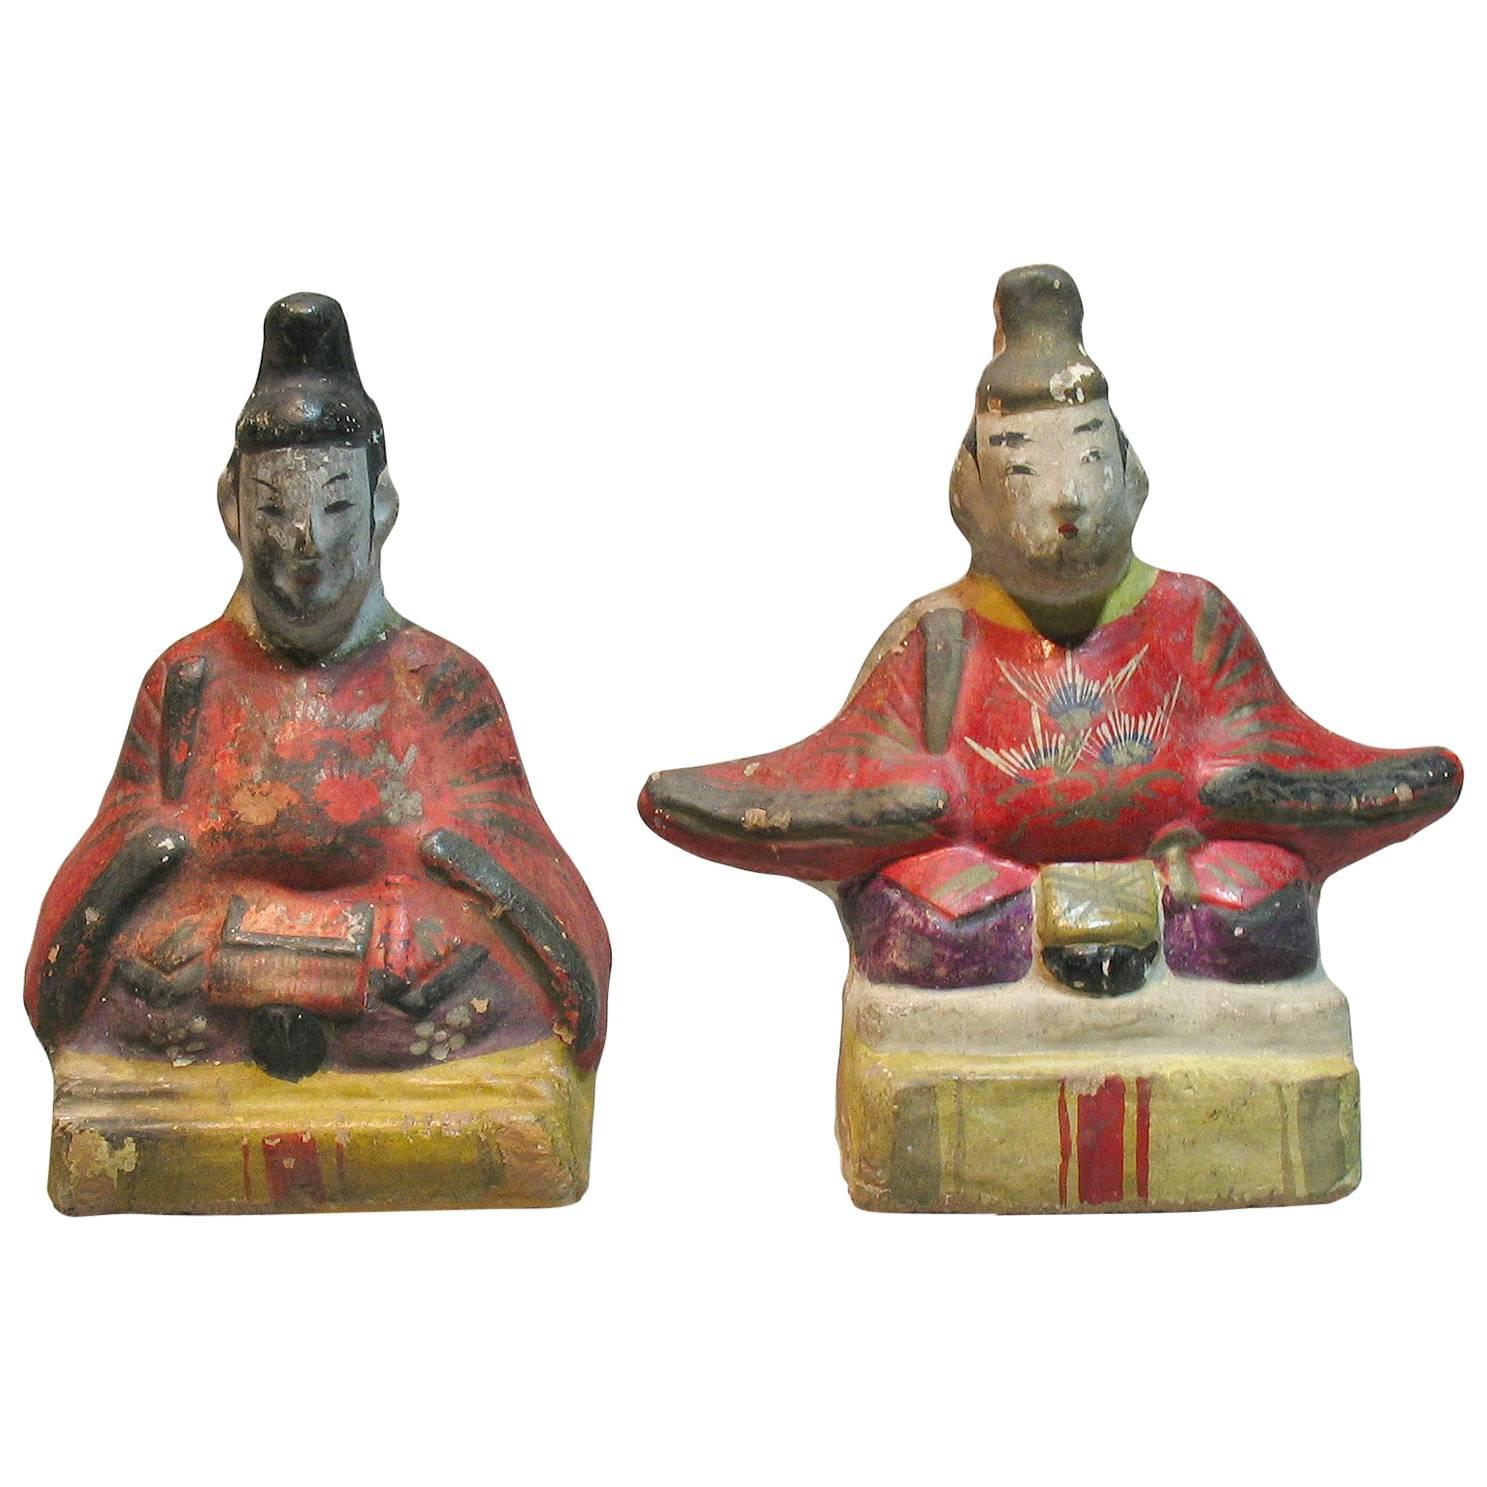 Seltene japanische Izumo-Keramik-Puppen von Kaiser und Tenjin, Meiji-Periode